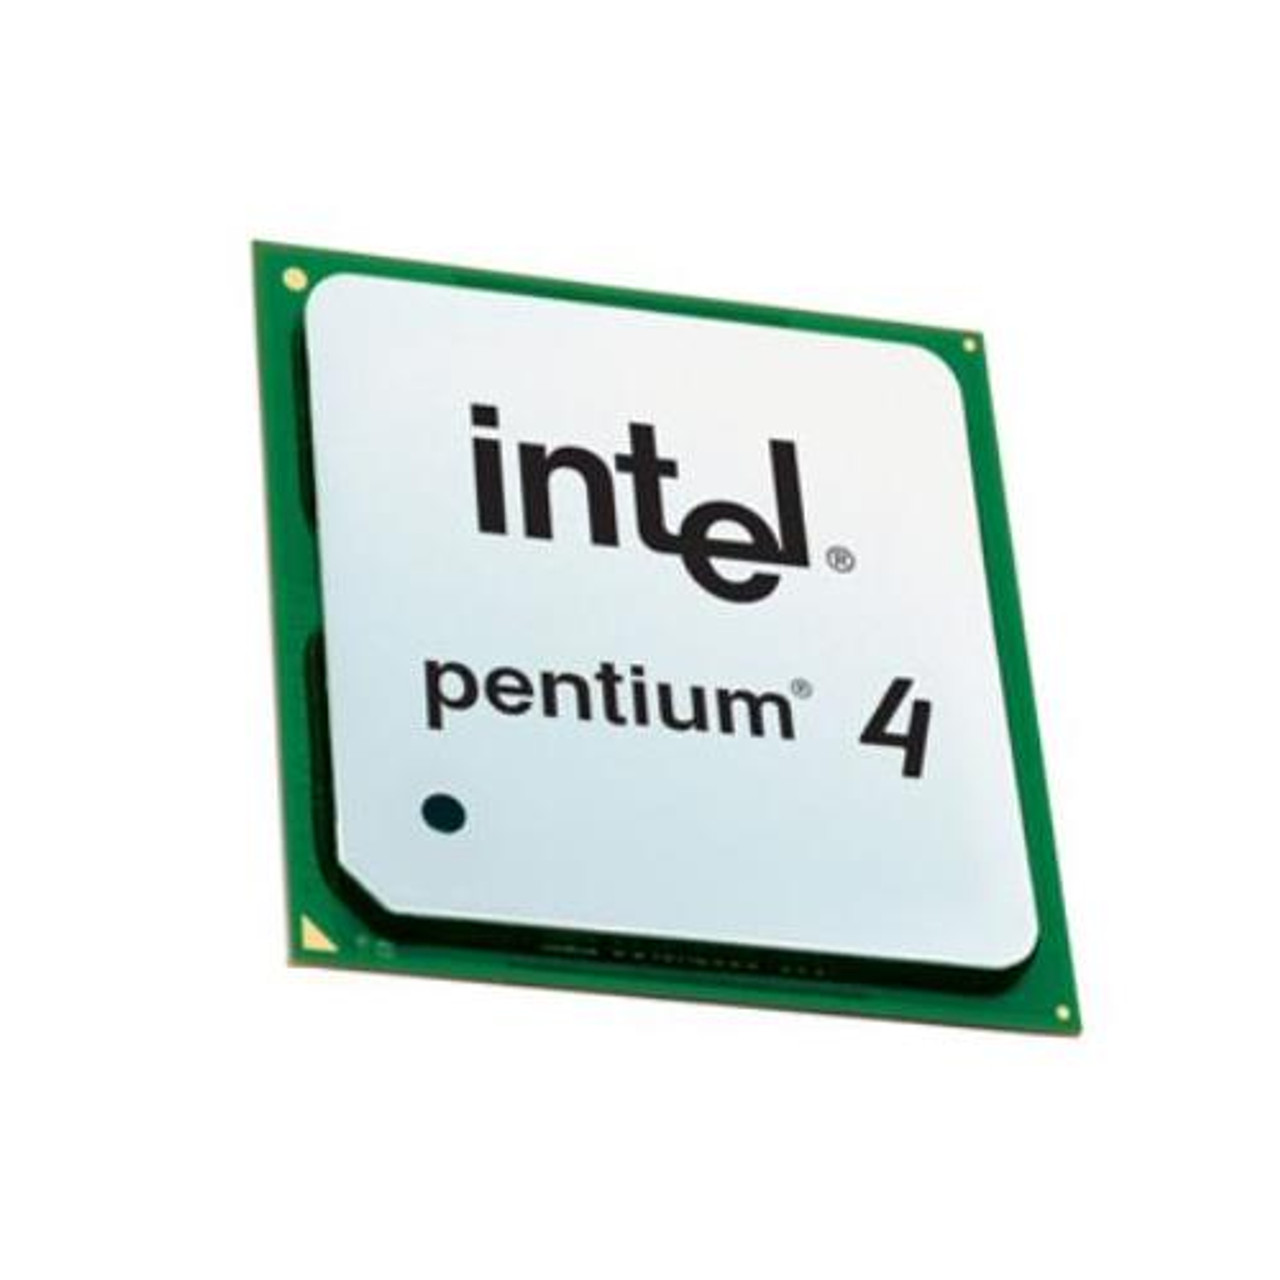 Uitbreiden Fjord galblaas SL6PC-3 Intel Pentium 4 2.40 GHz Processor Unboxed OEM